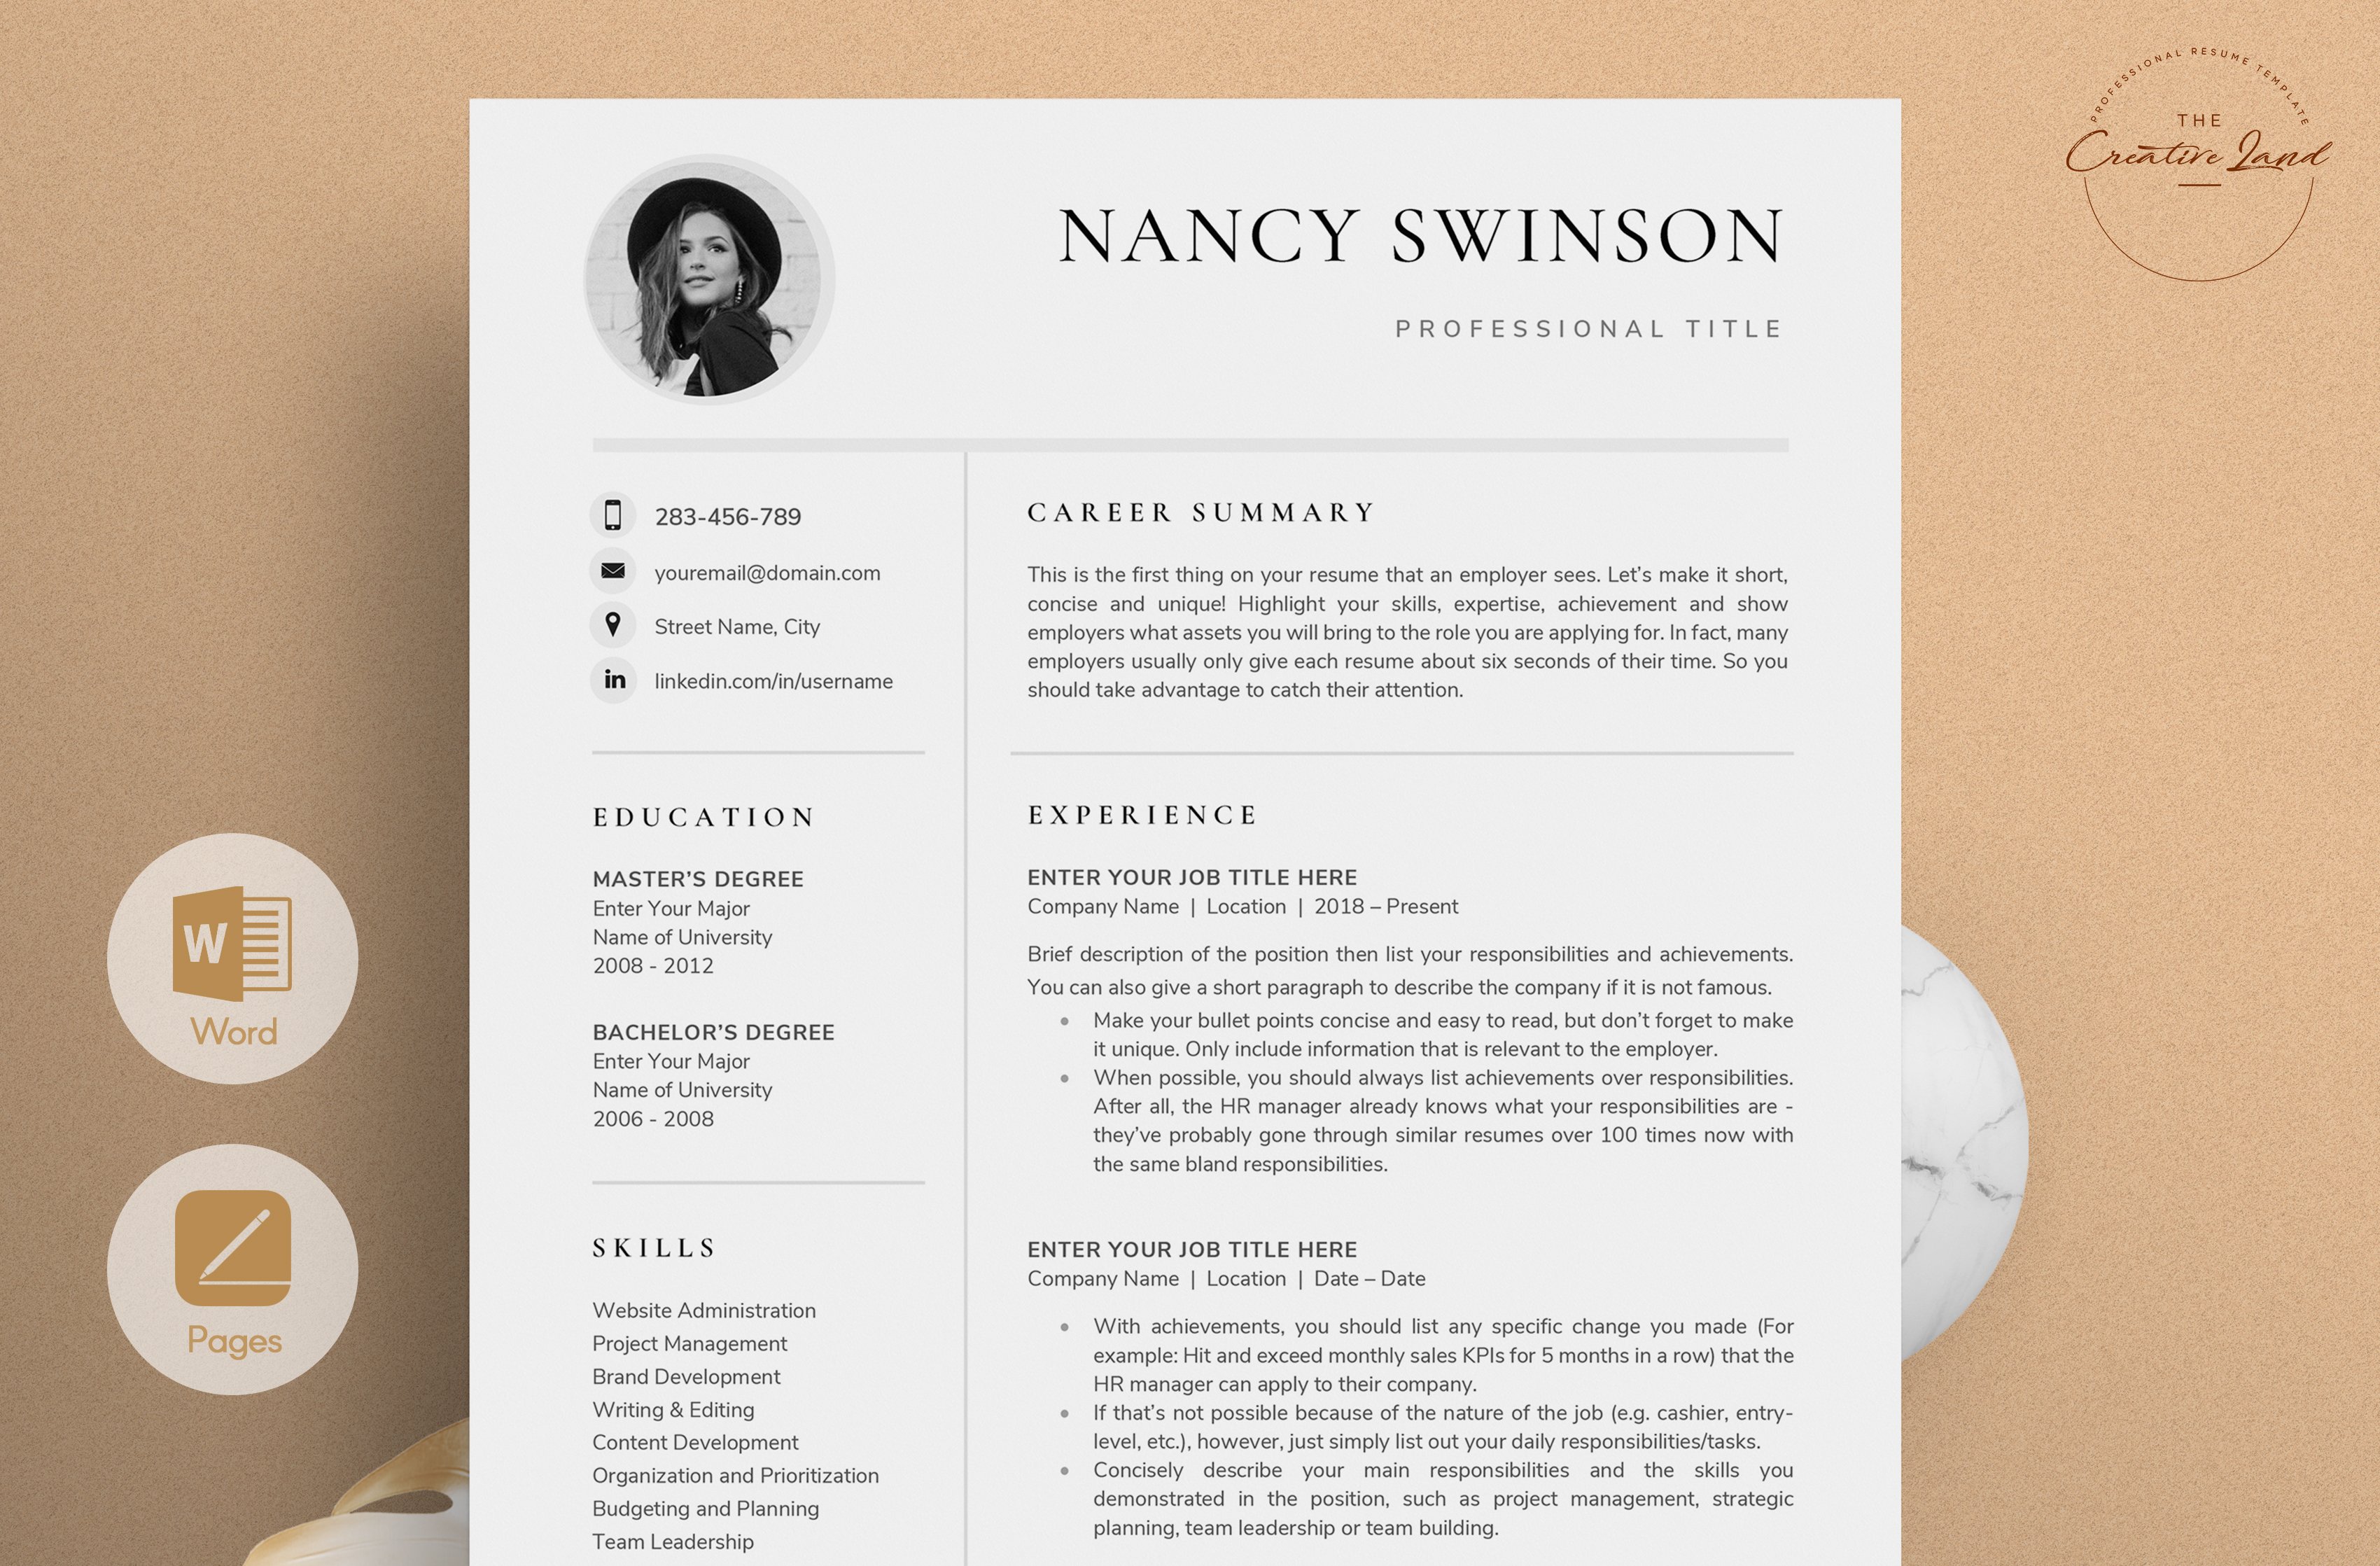 Resume/CV - The Nancy cover image.